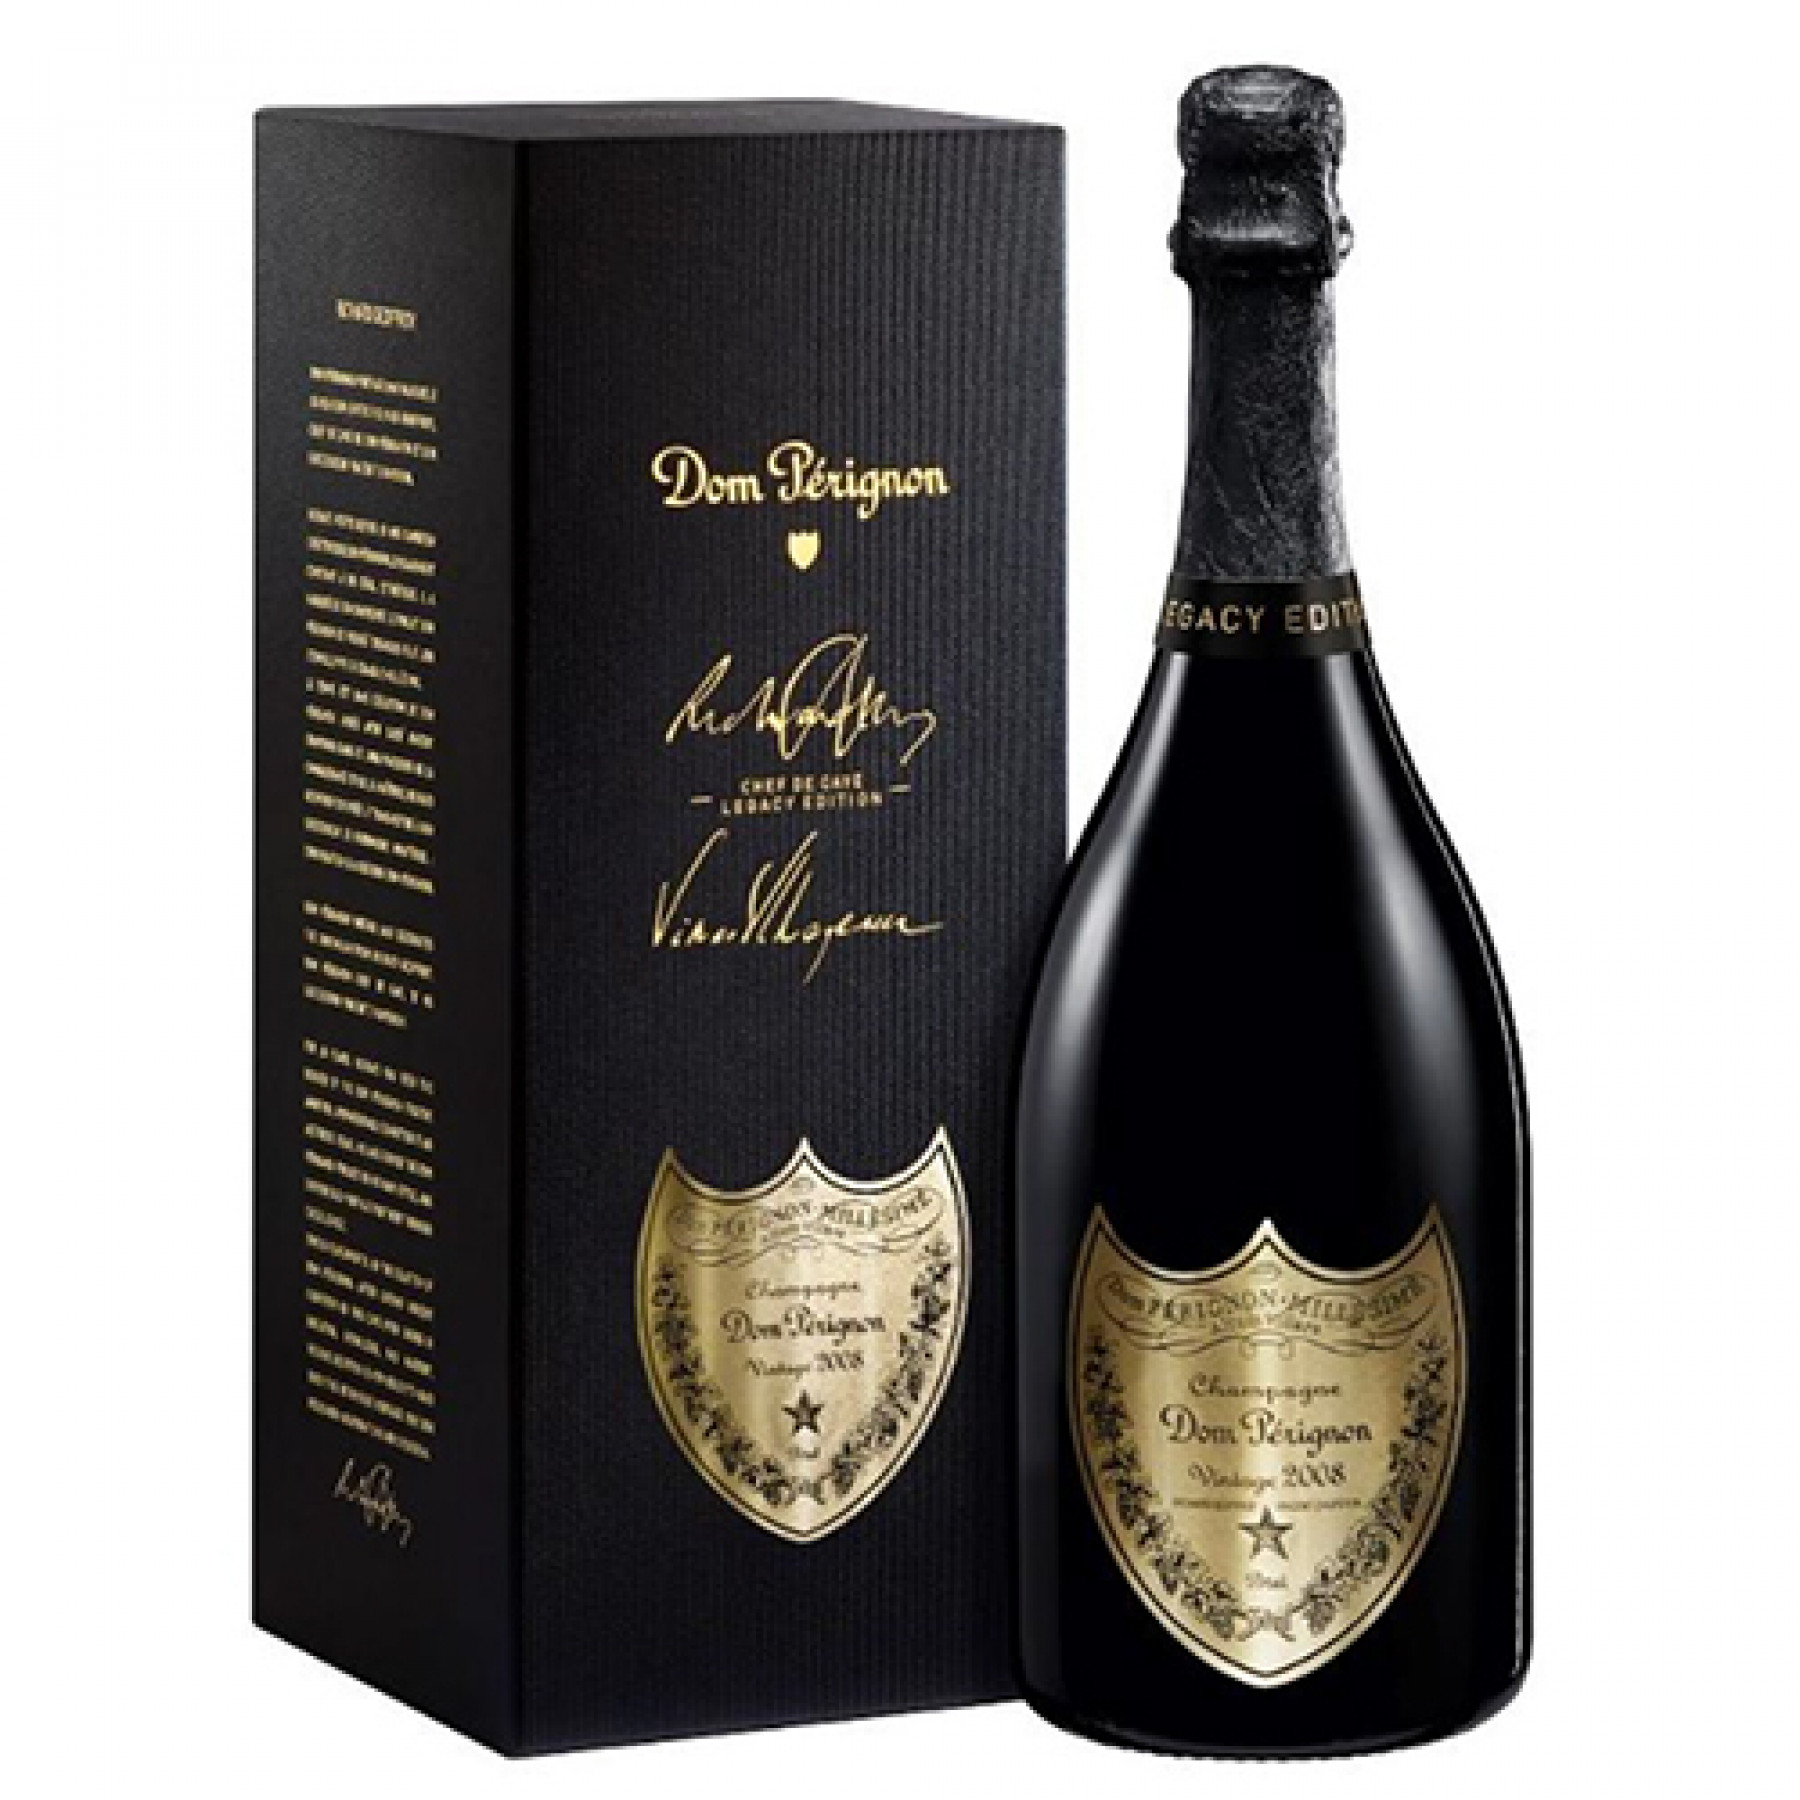 2008 Dom Perignon Brut Champagne - click image for full description